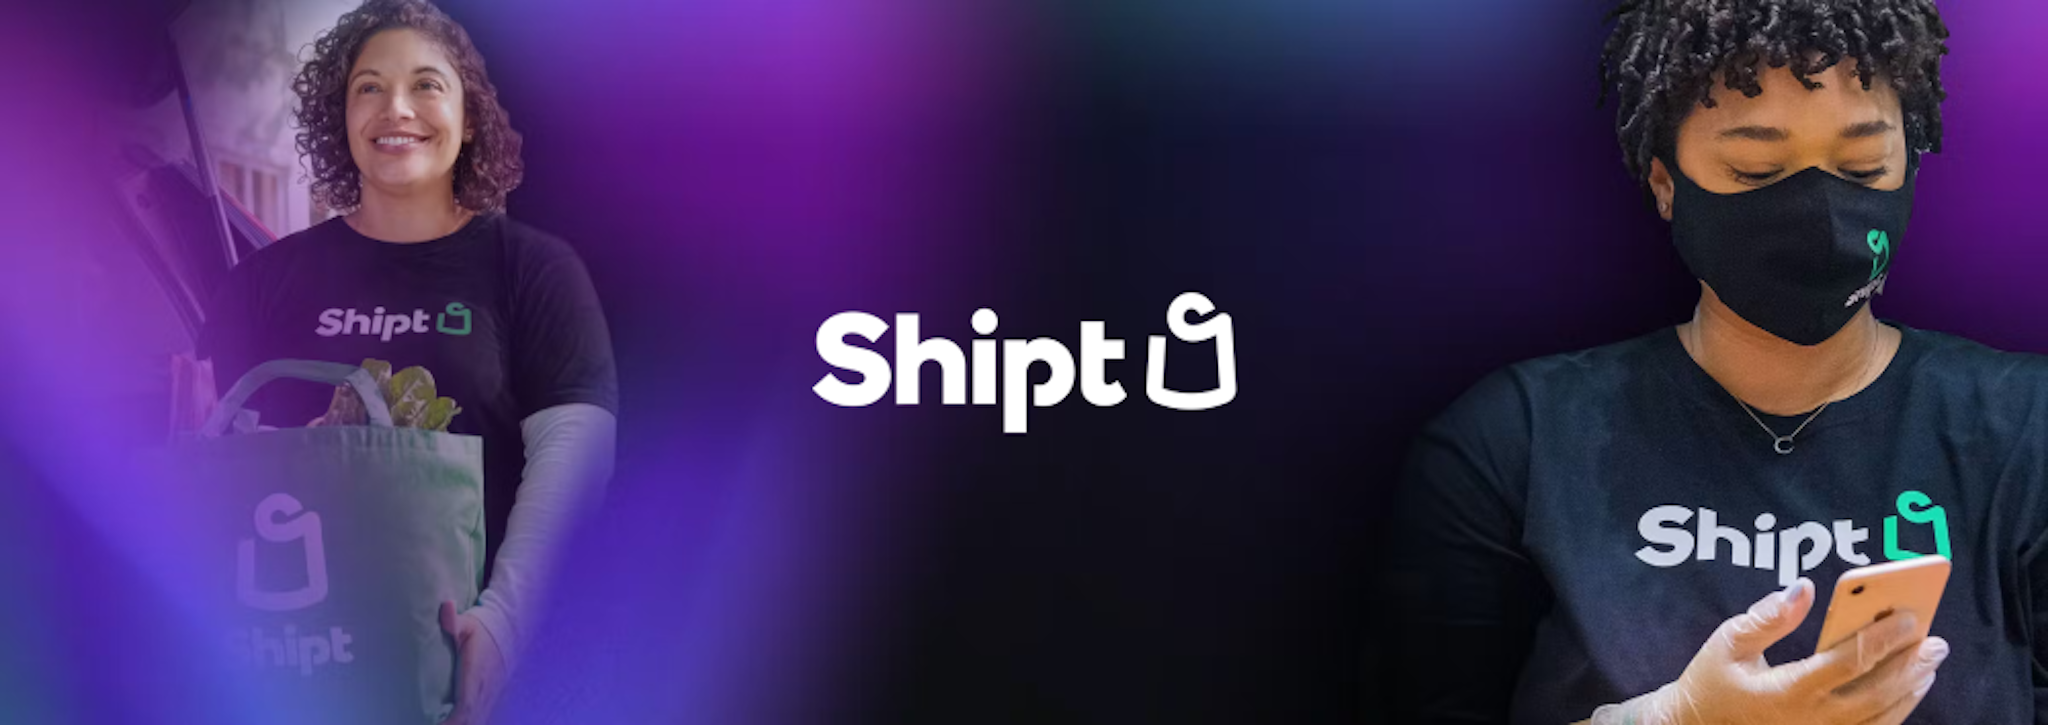 shipt-thumbnail